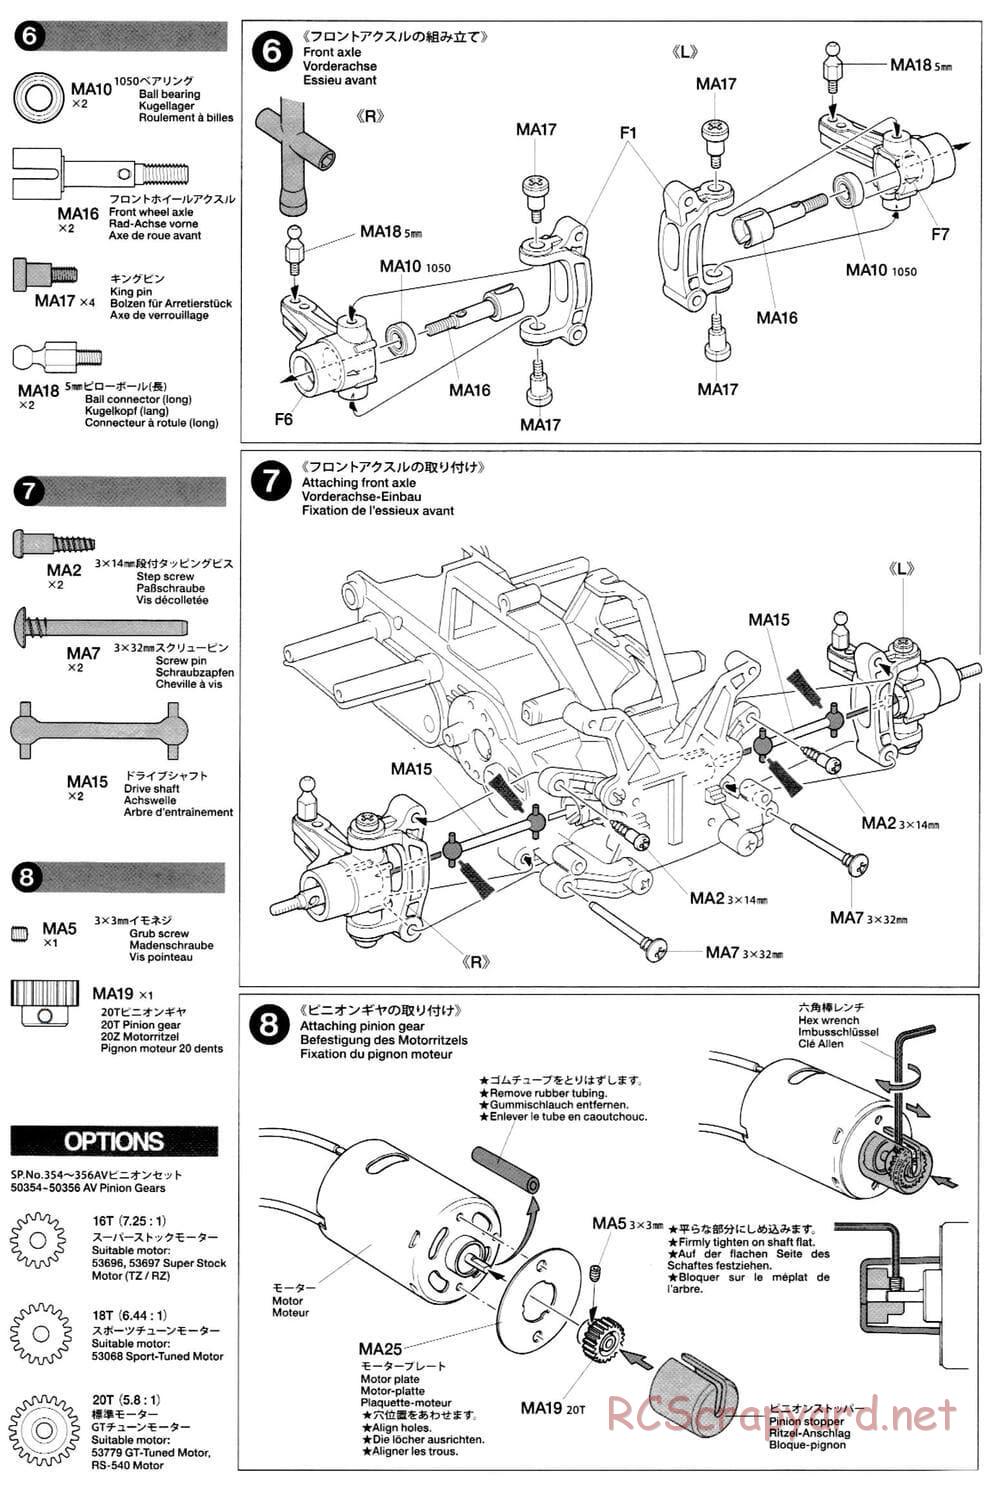 Tamiya - M-03L Chassis - Manual - Page 6